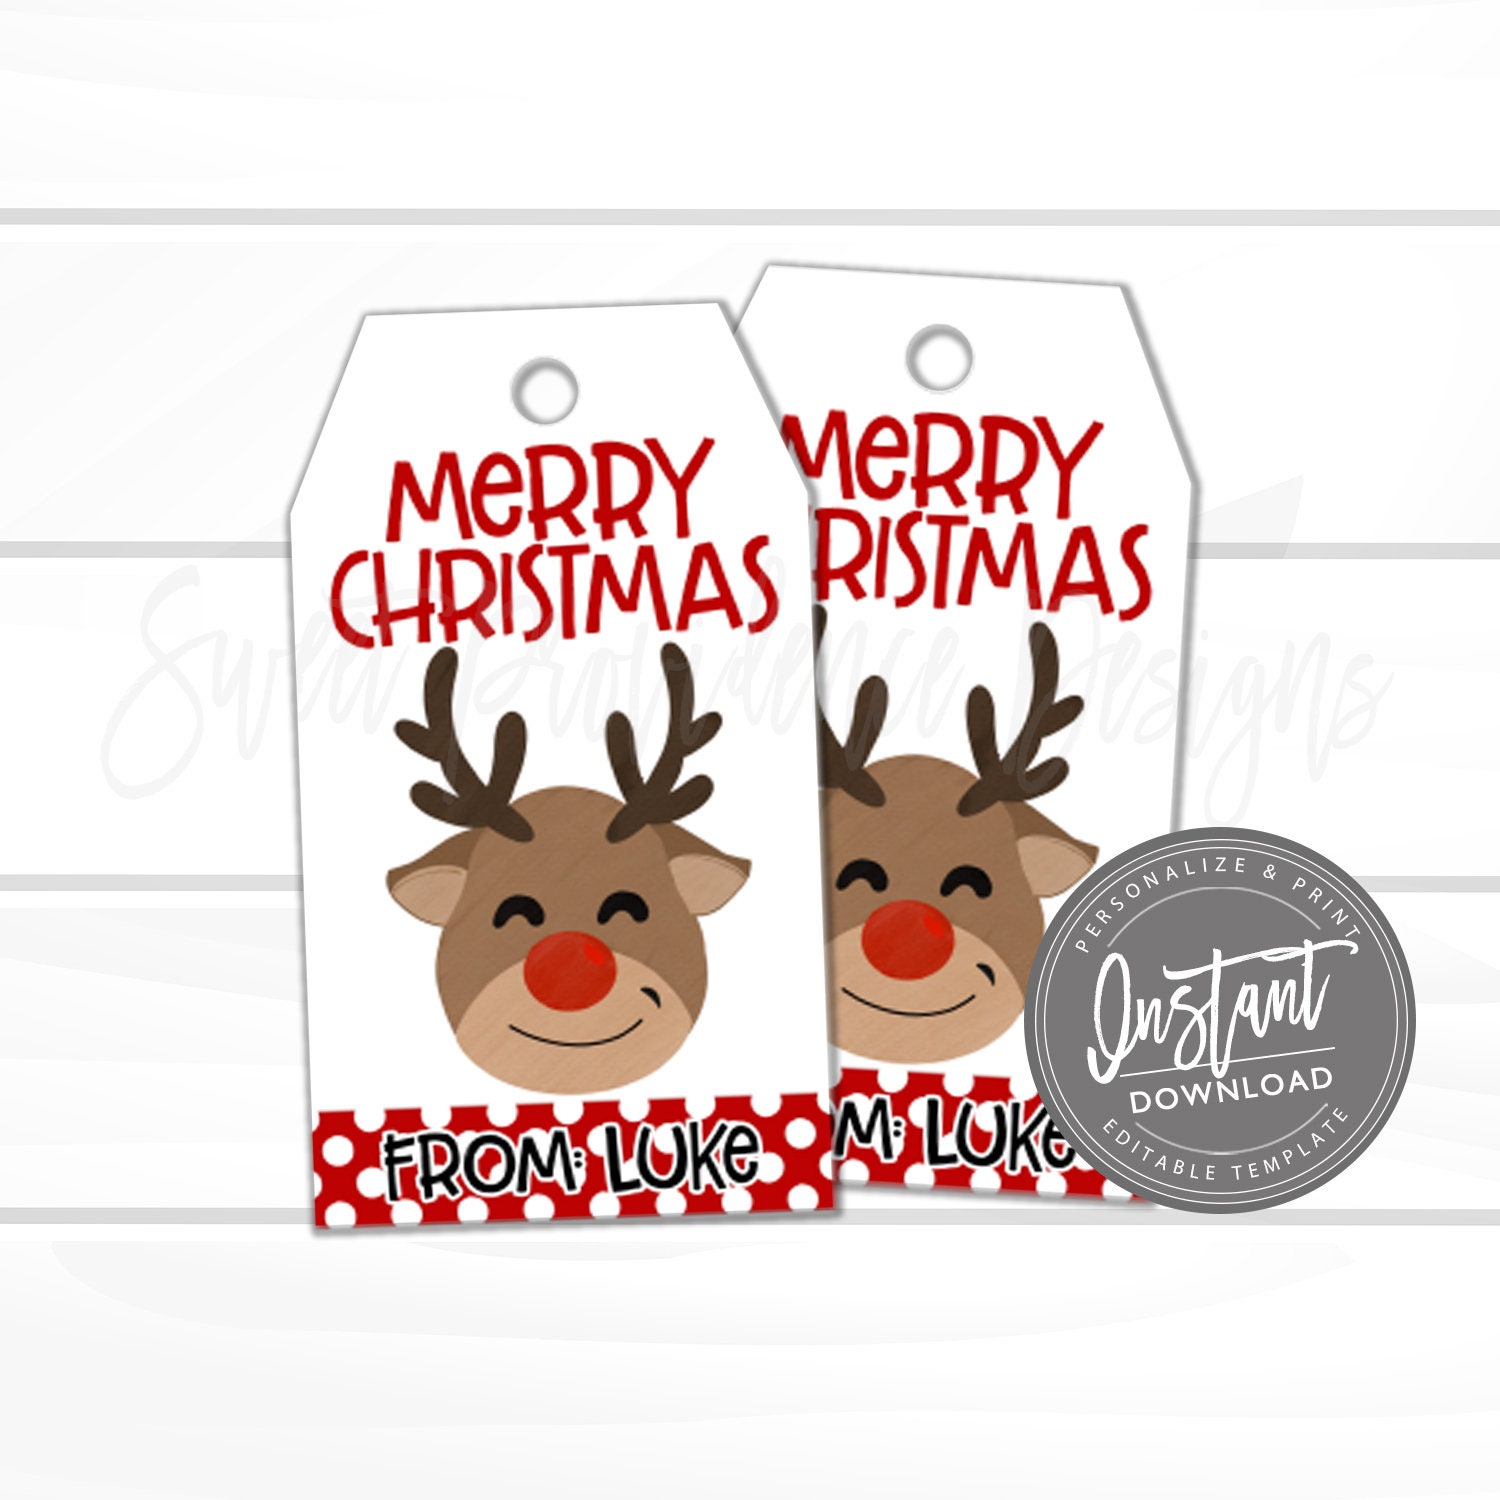 Christmas Gift Tags with Santa and Rudolph Printable Editable